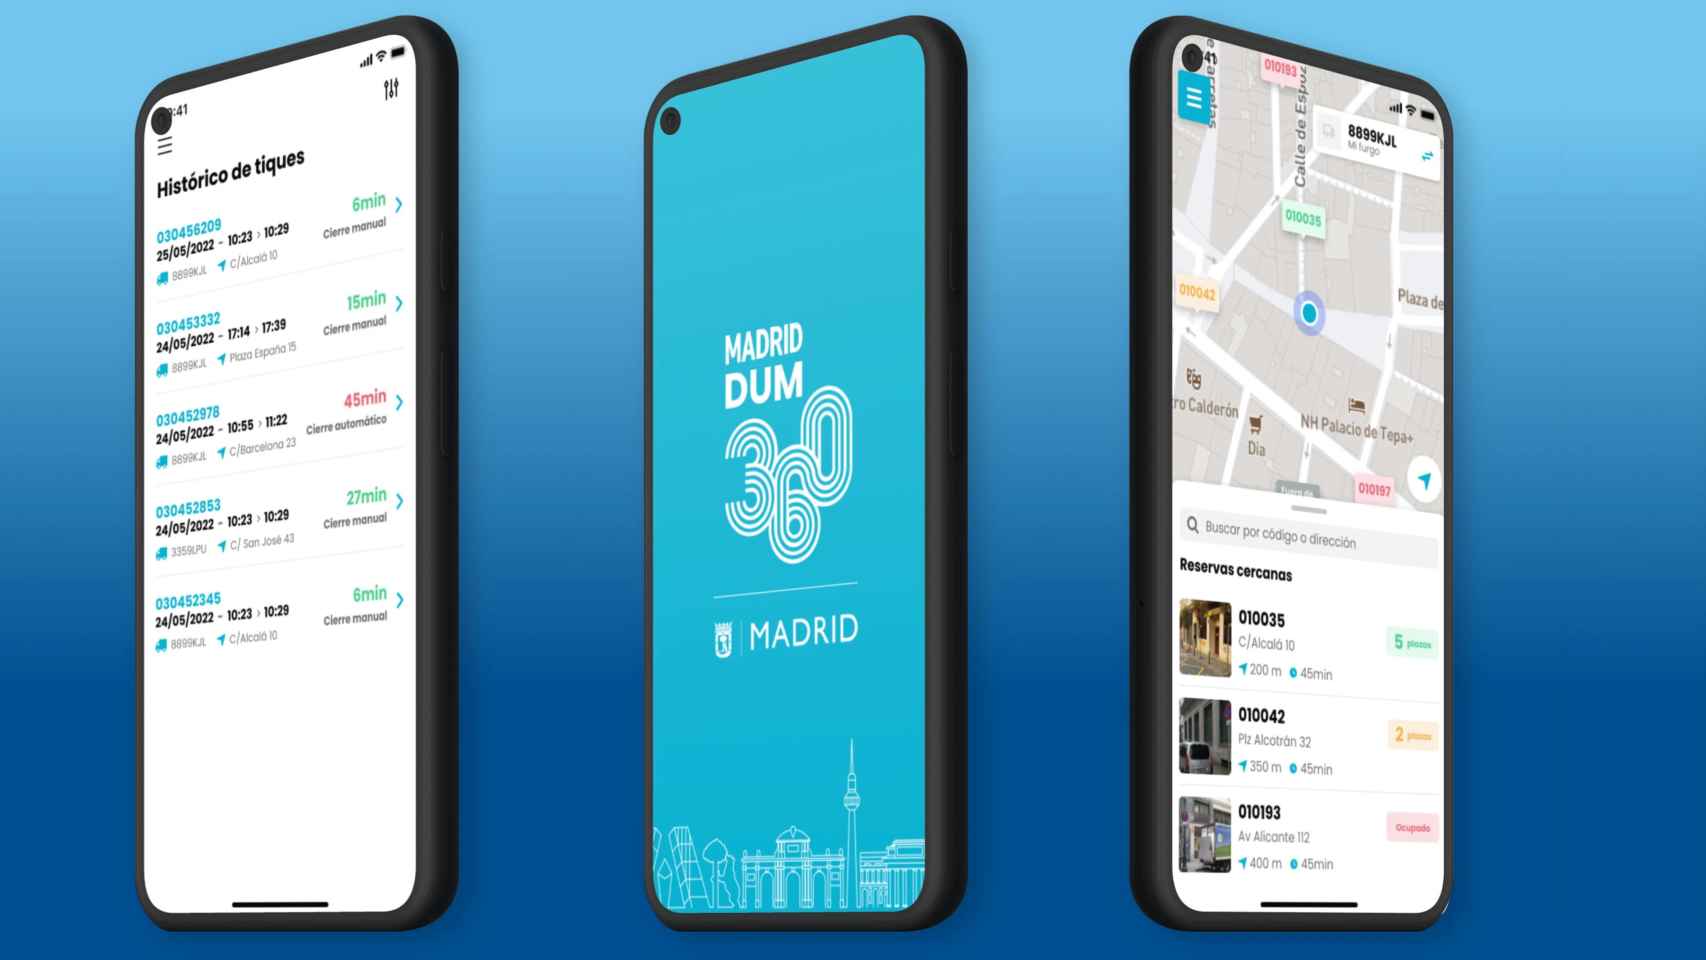 Madrid DUM 360 aplicación móvil